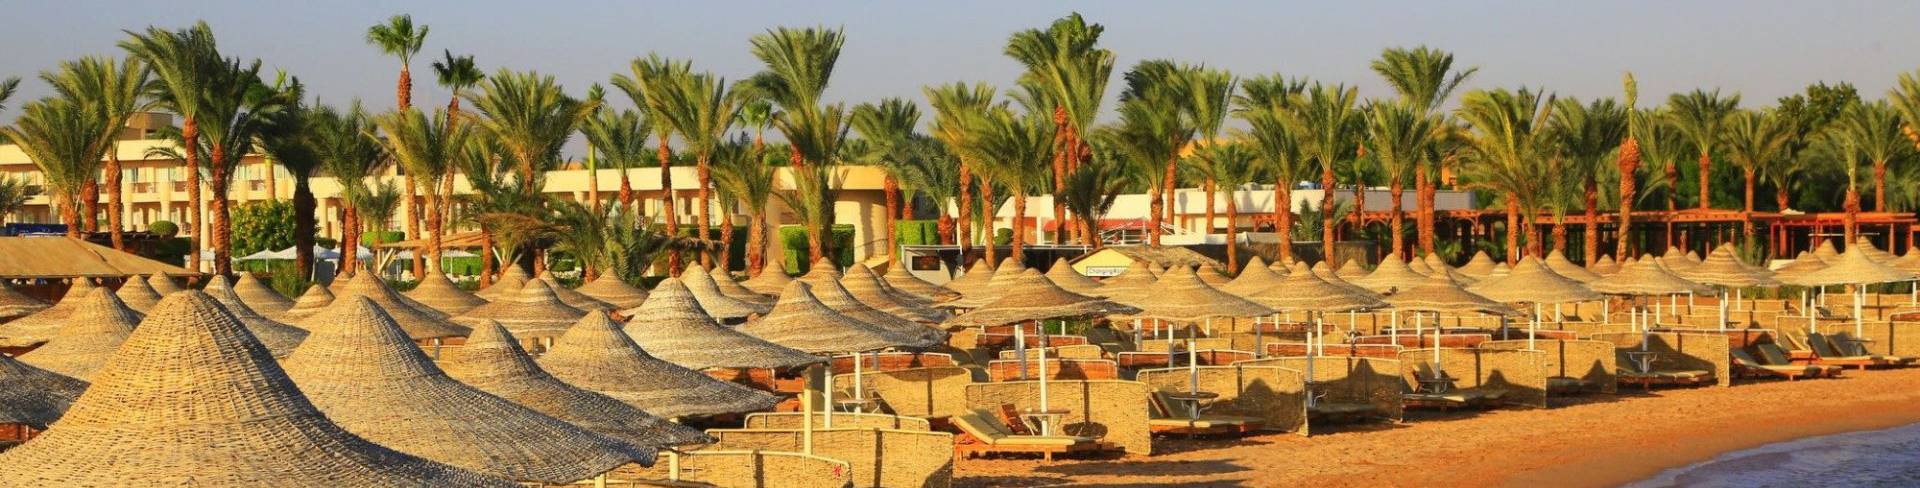 Макади - пляжный курорт на Красном море в Египте